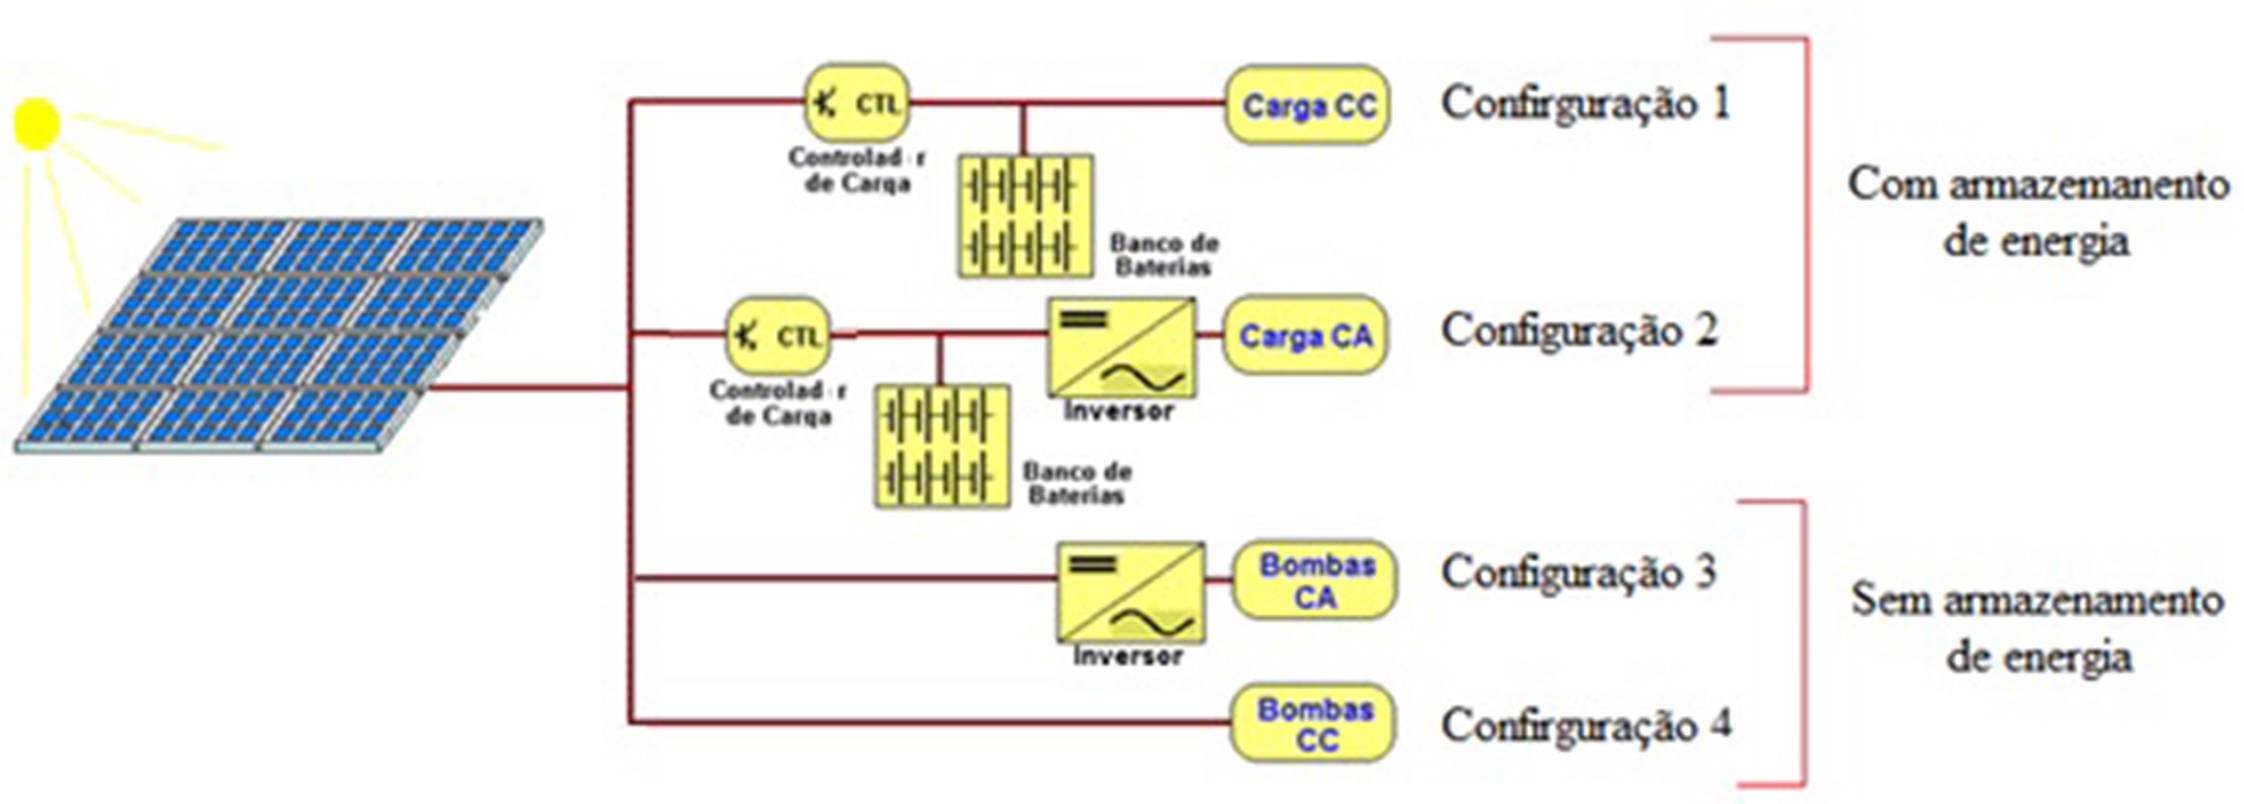 Configurações de sistemas fotovoltaicos em função da carga utilizada